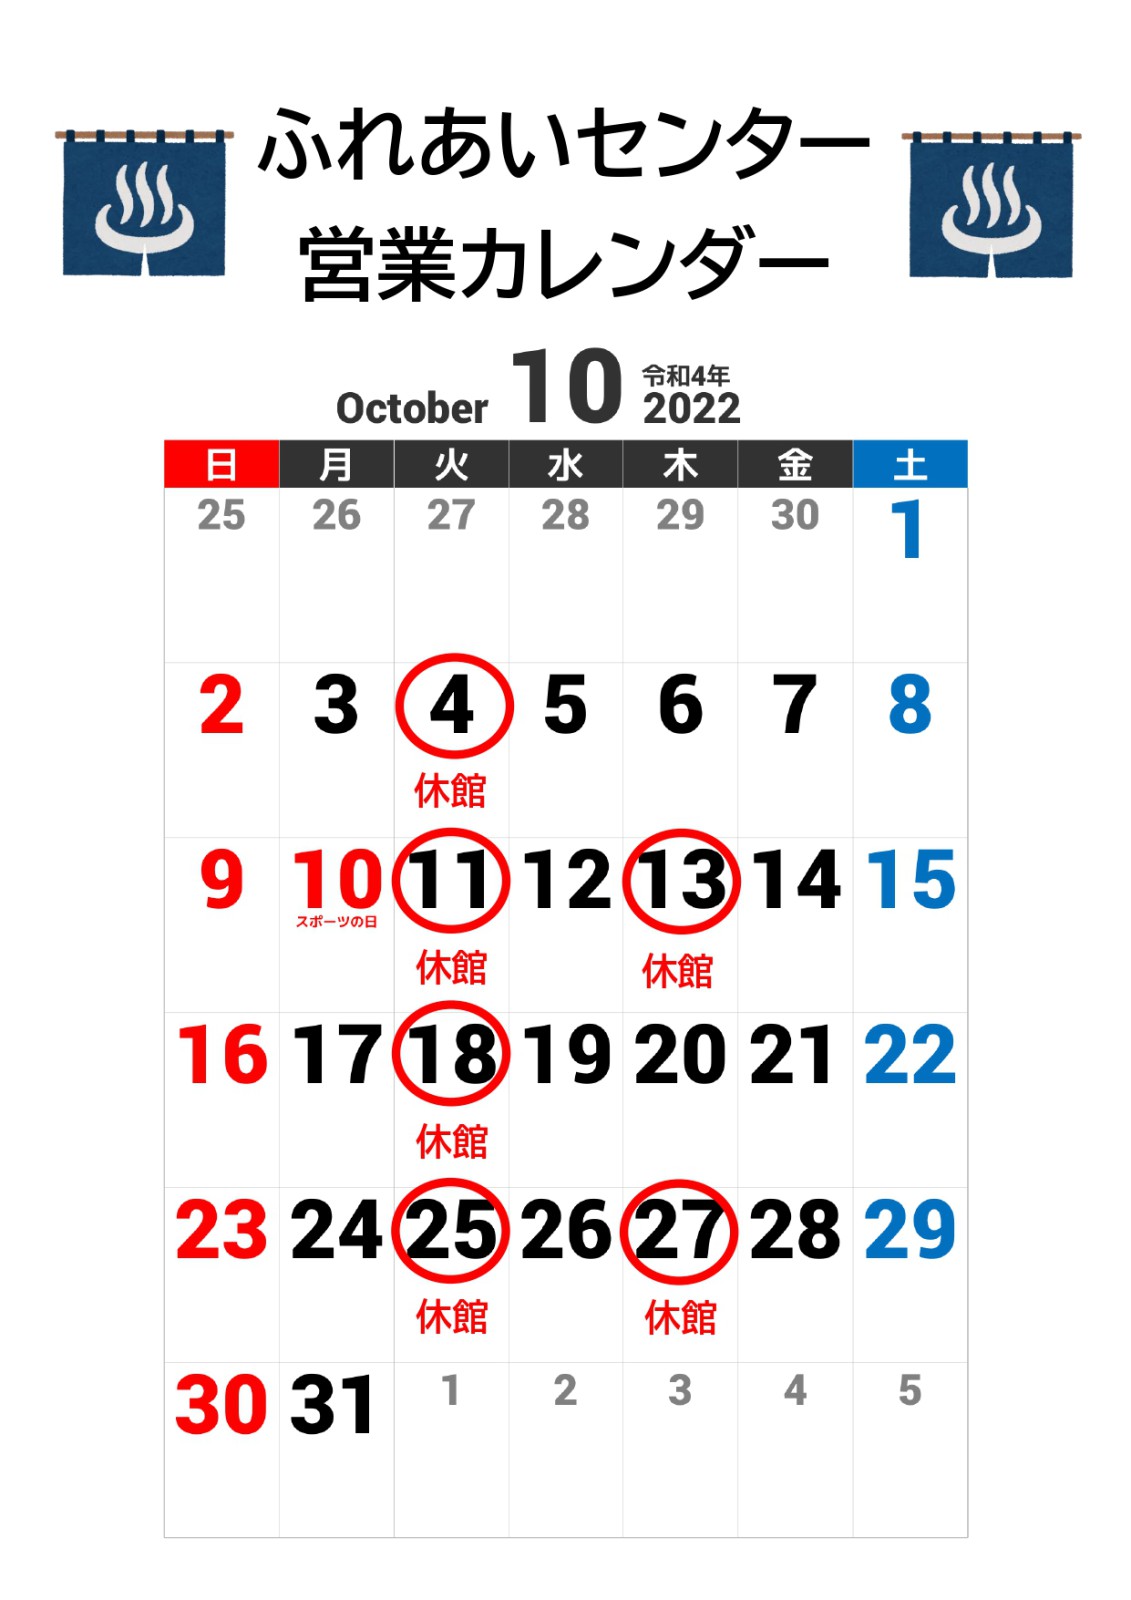 【ふれあいセンター】10月の営業カレンダー